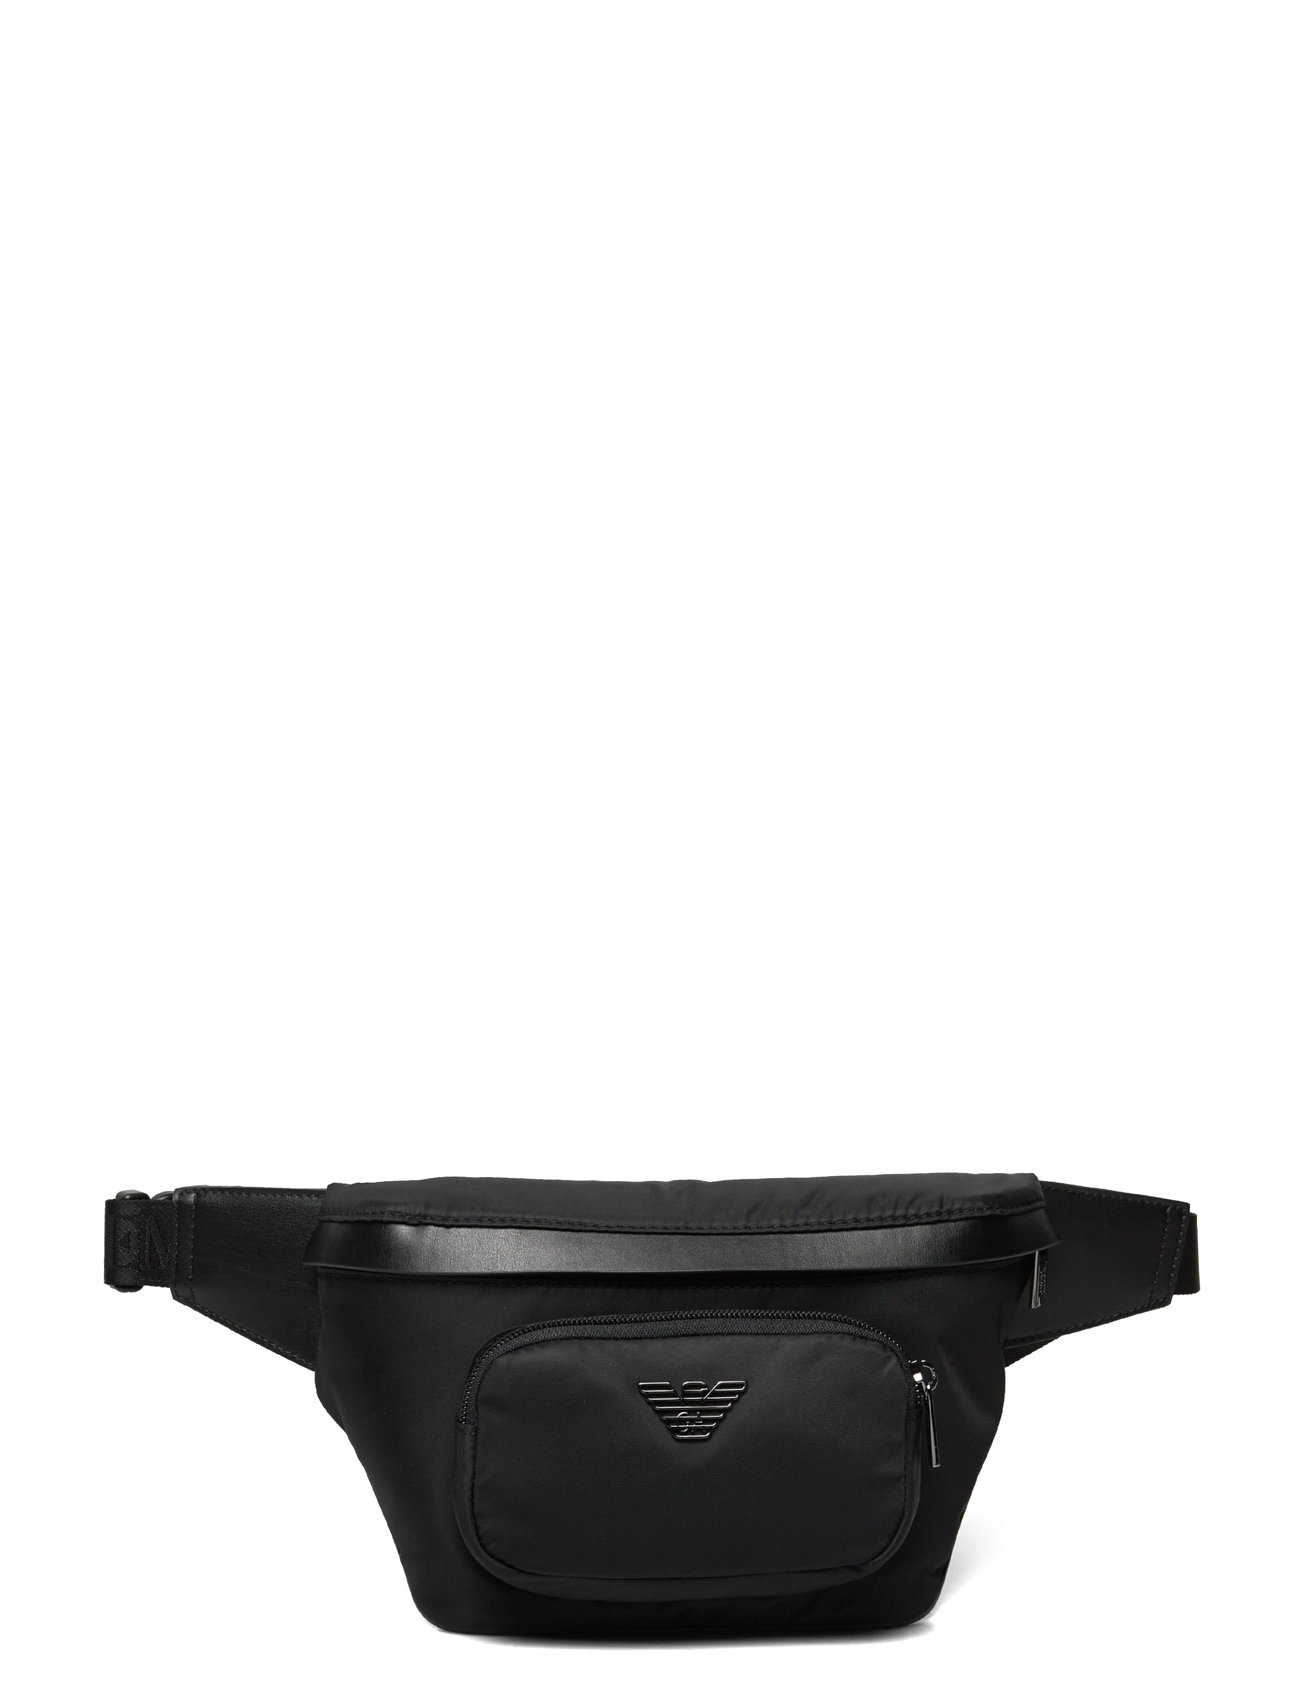 Belt Bag Designers Bum Bags Black Emporio Armani